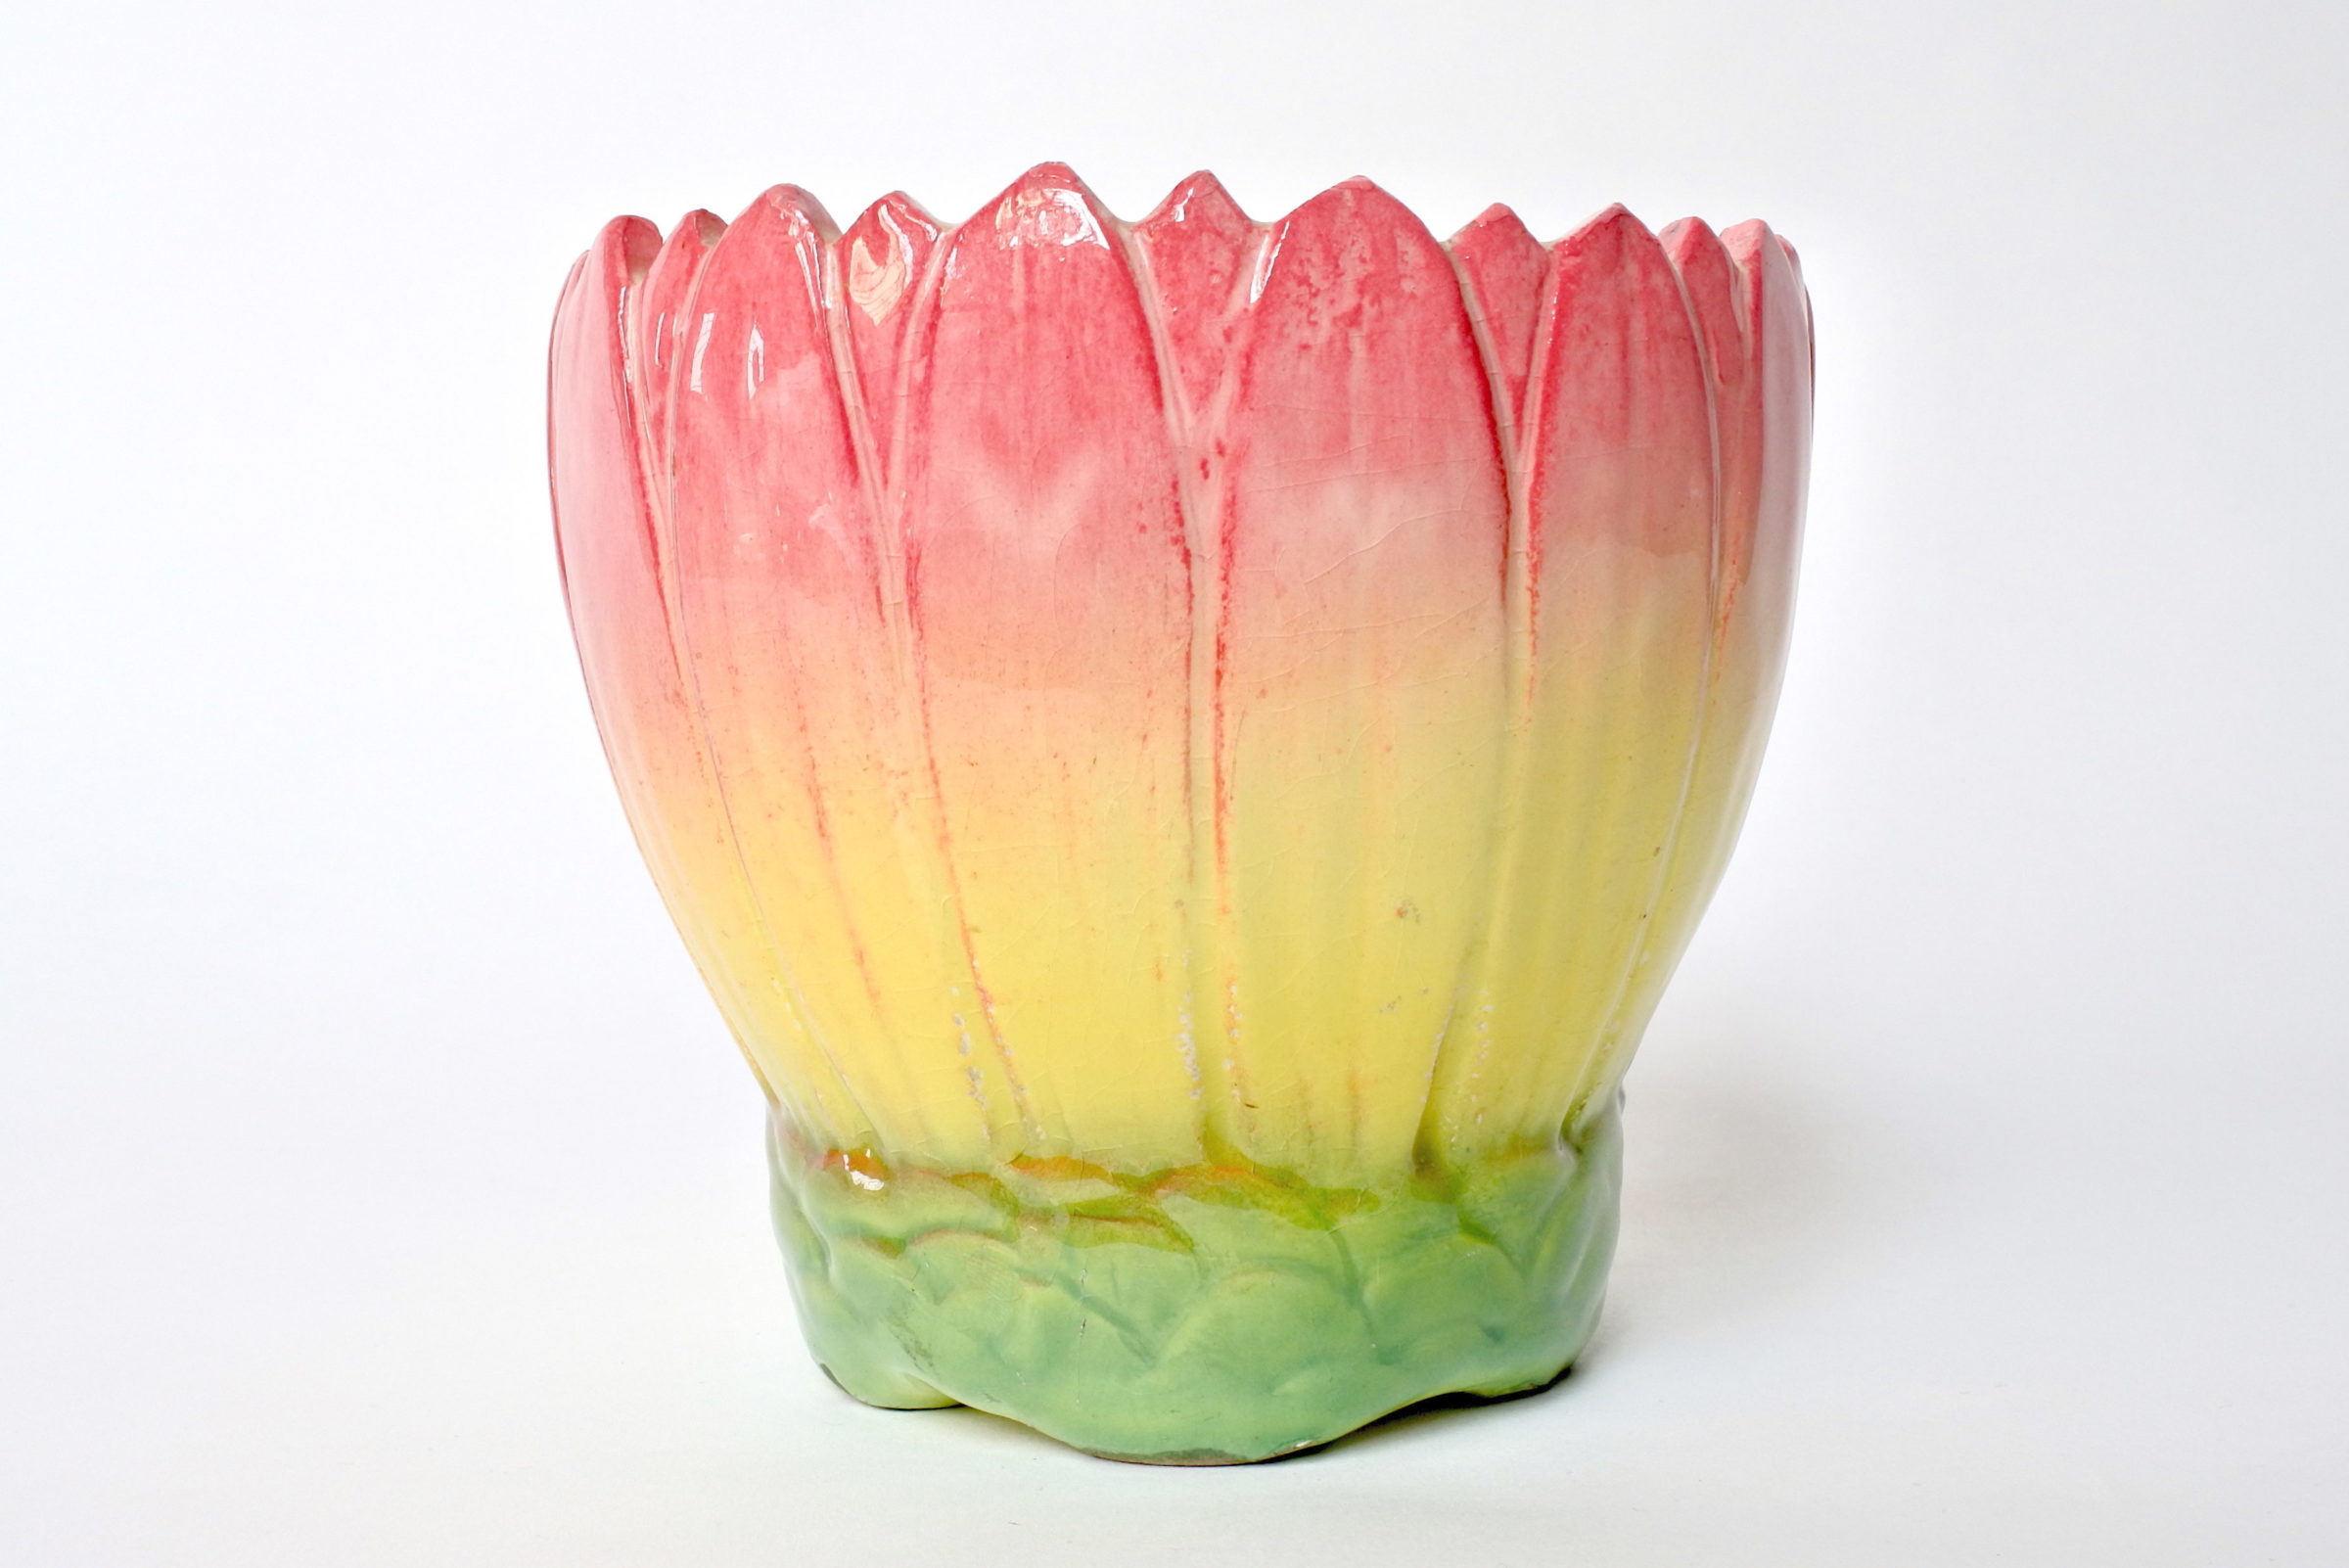 Cache pot Massier in ceramica barbotine a forma di corolla di fiore